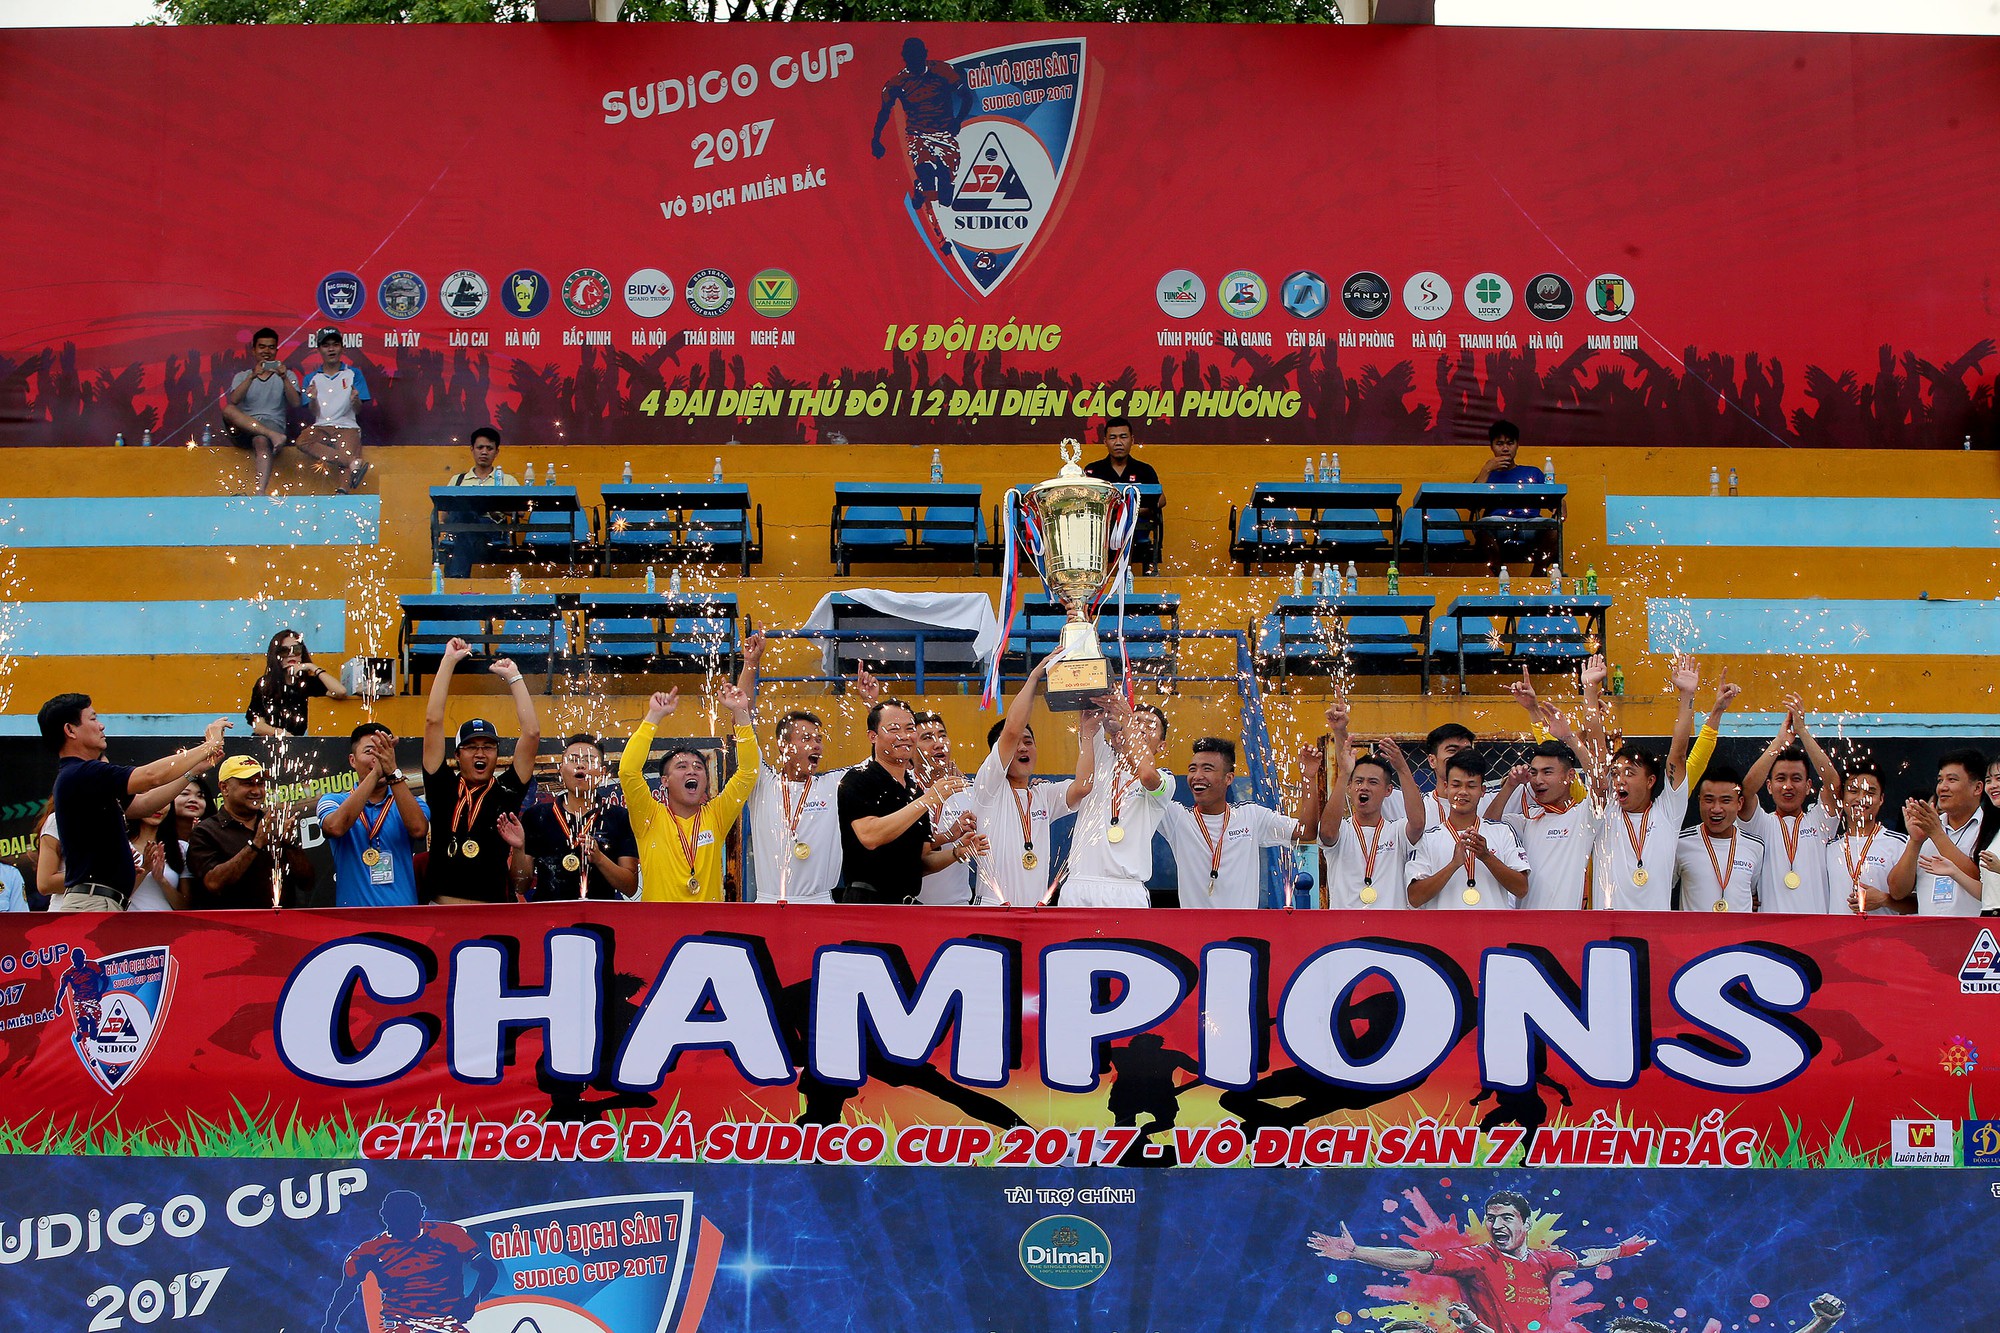 BIDV Quang Trung lên ngôi một cách đầy xứng đáng ở Sudico Cup 2017. Ảnh Hải Đăng